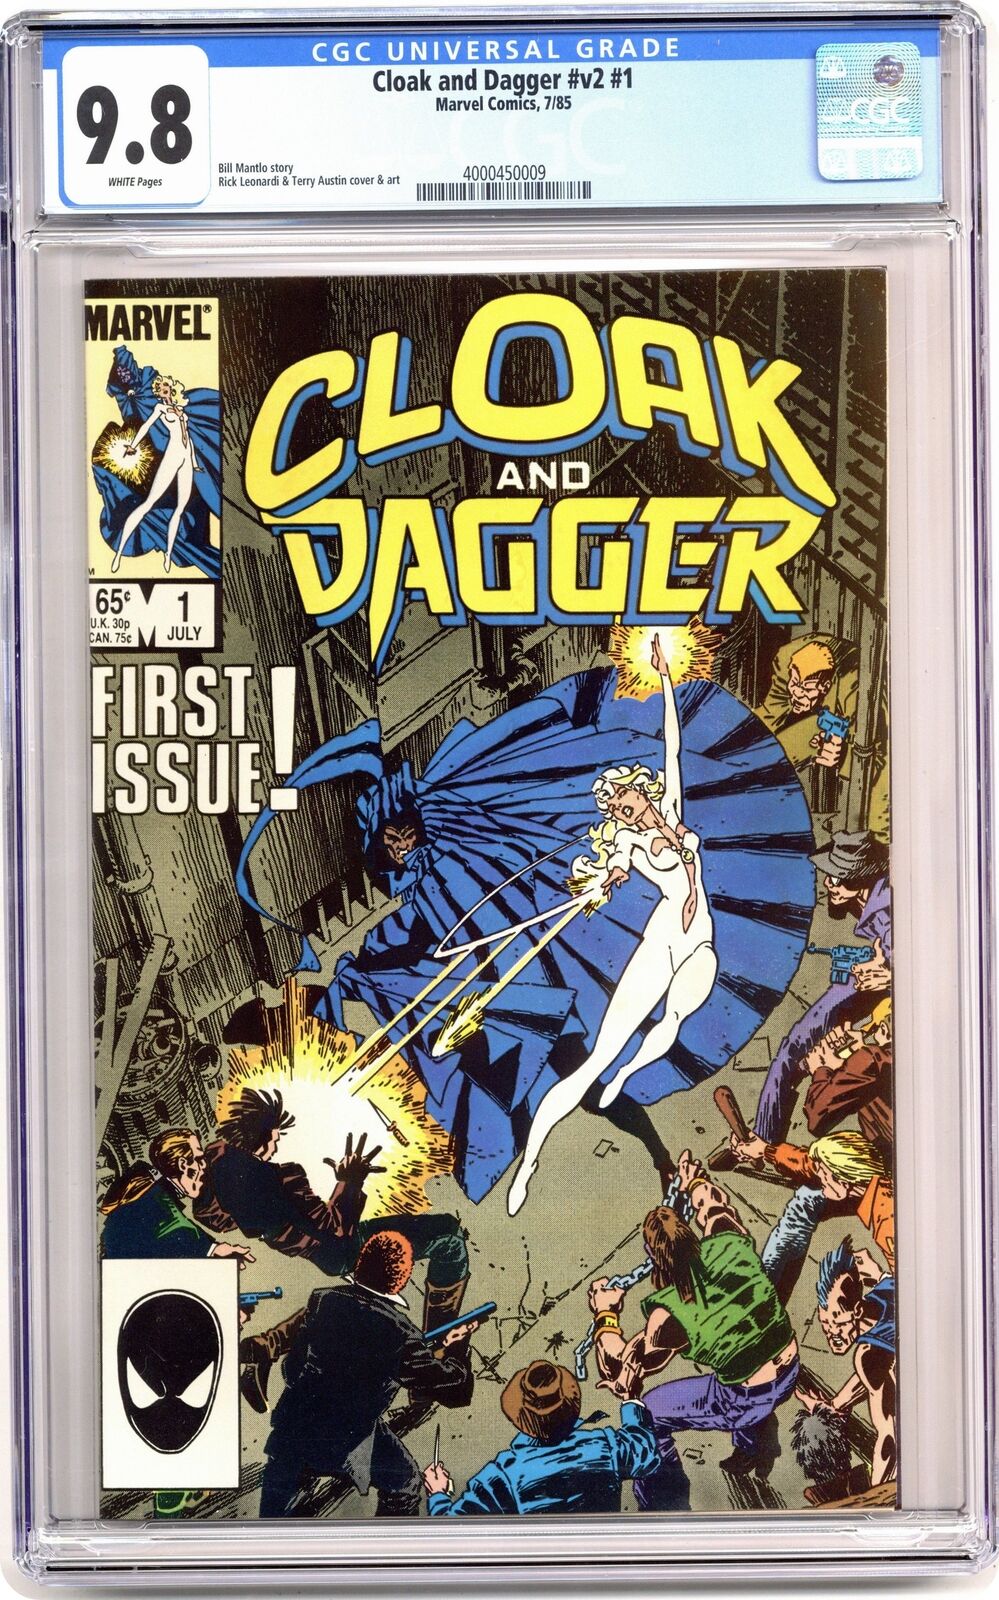 Cloak and Dagger #1 CGC 9.8 1985 4000450009